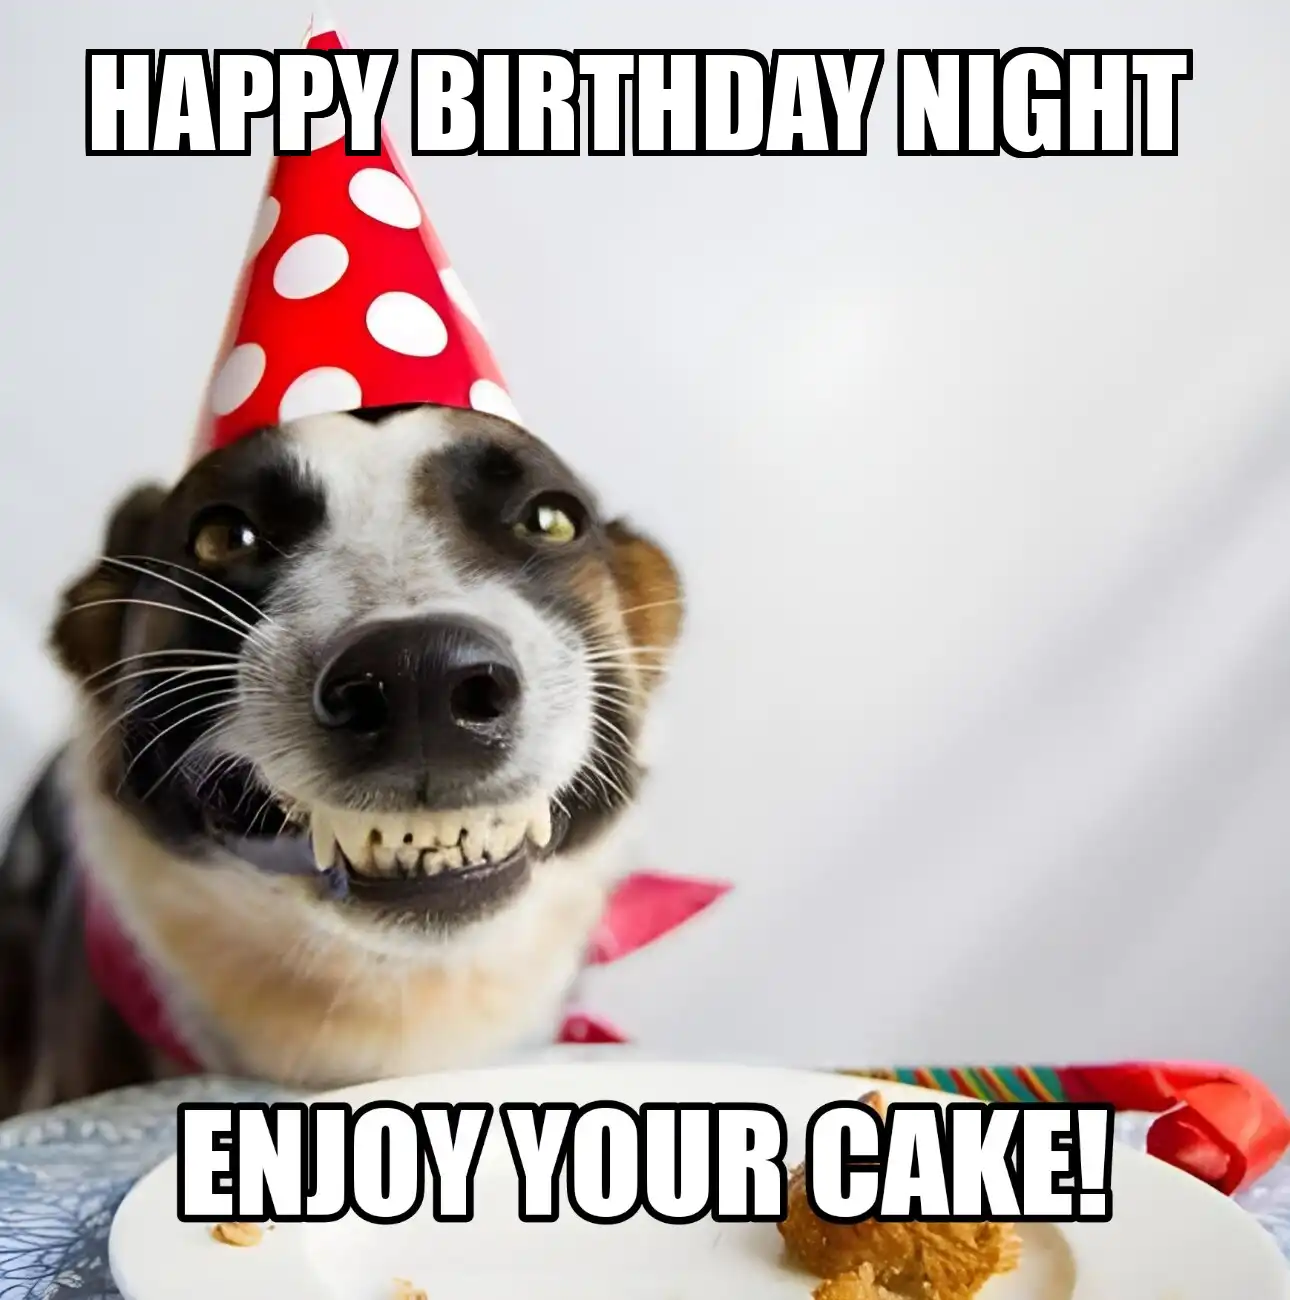 Happy Birthday Night Enjoy Your Cake Dog Meme